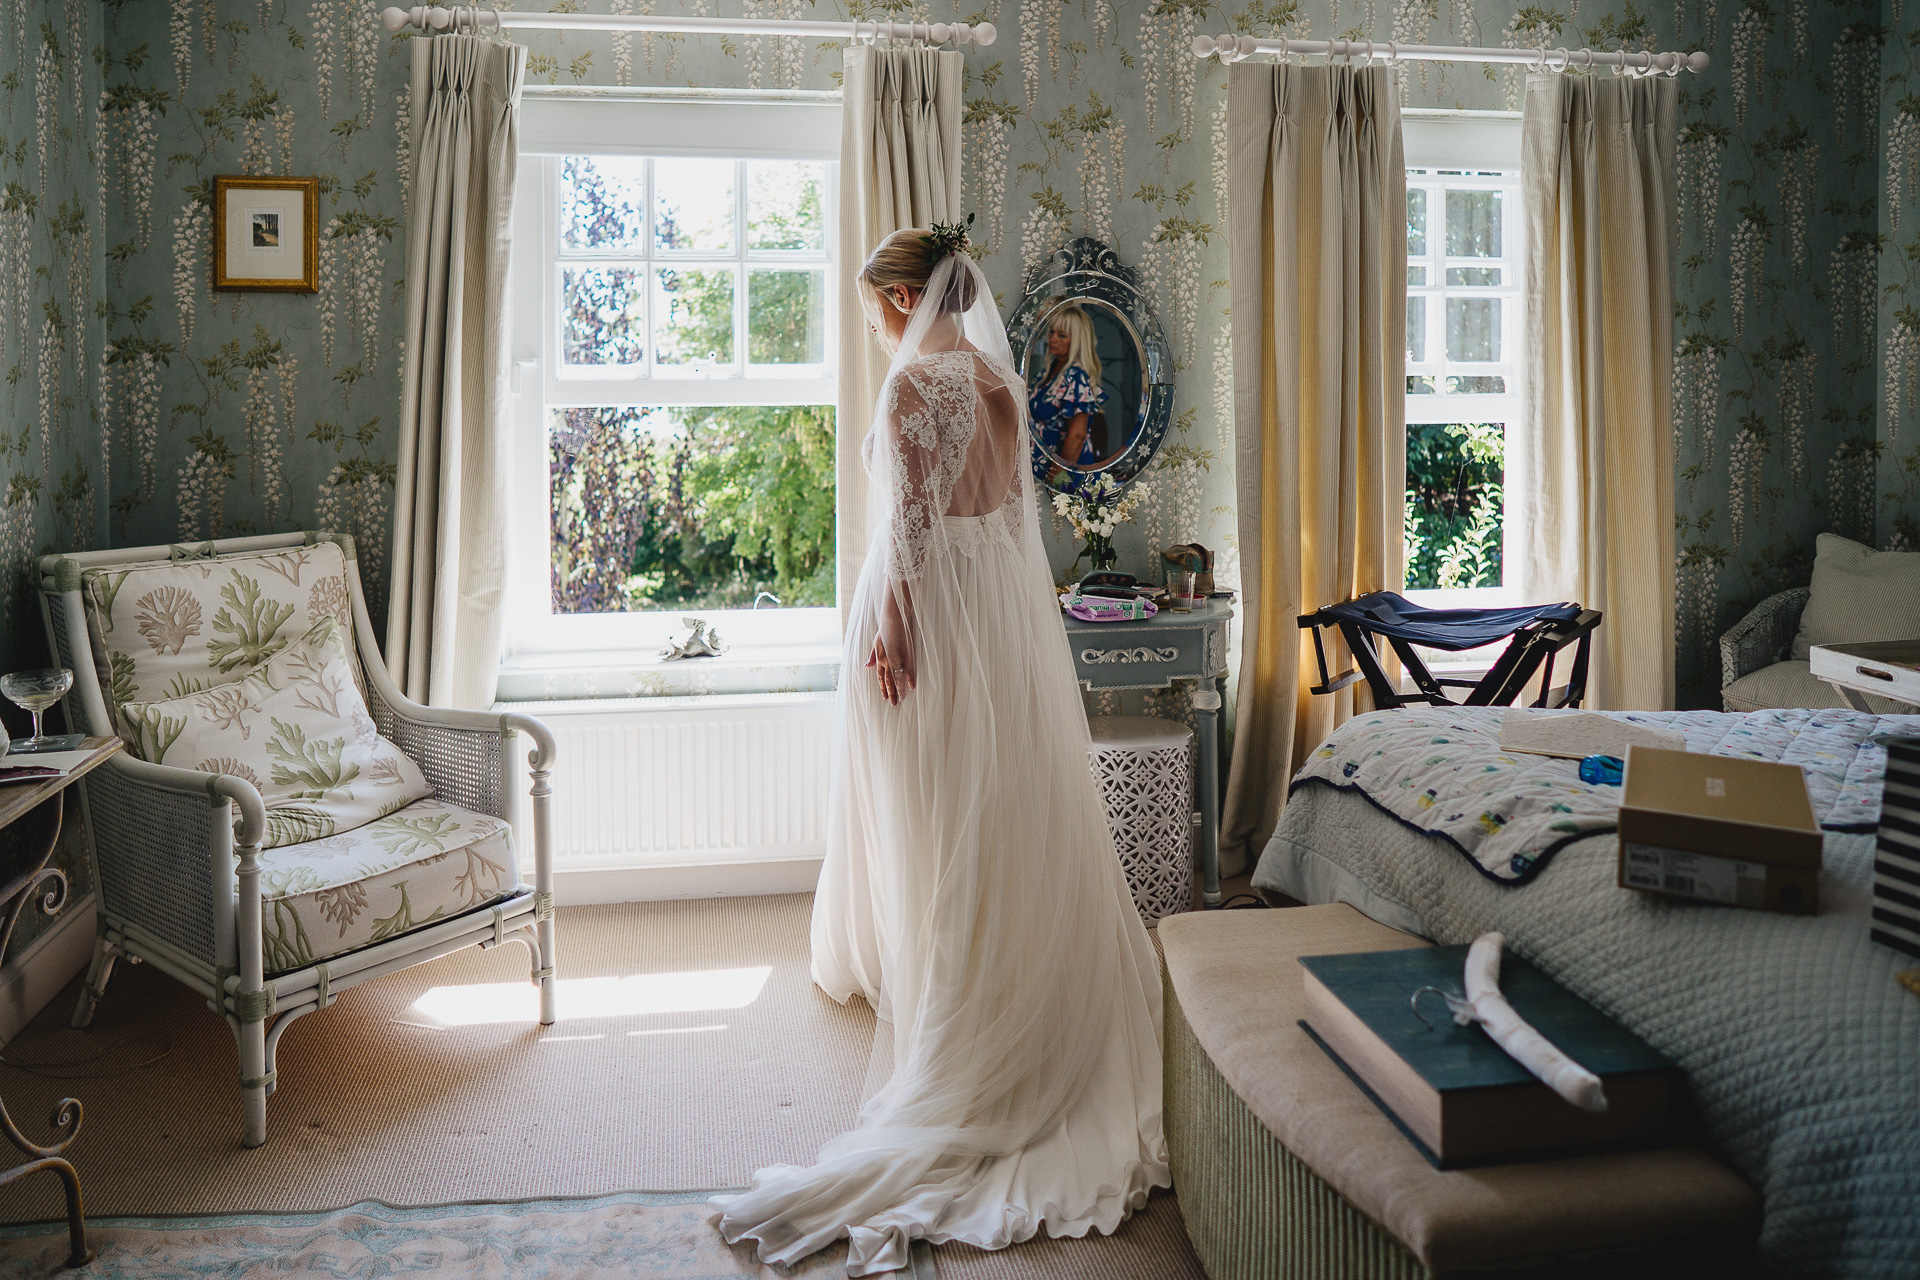 Bride in her wedding dress by a window